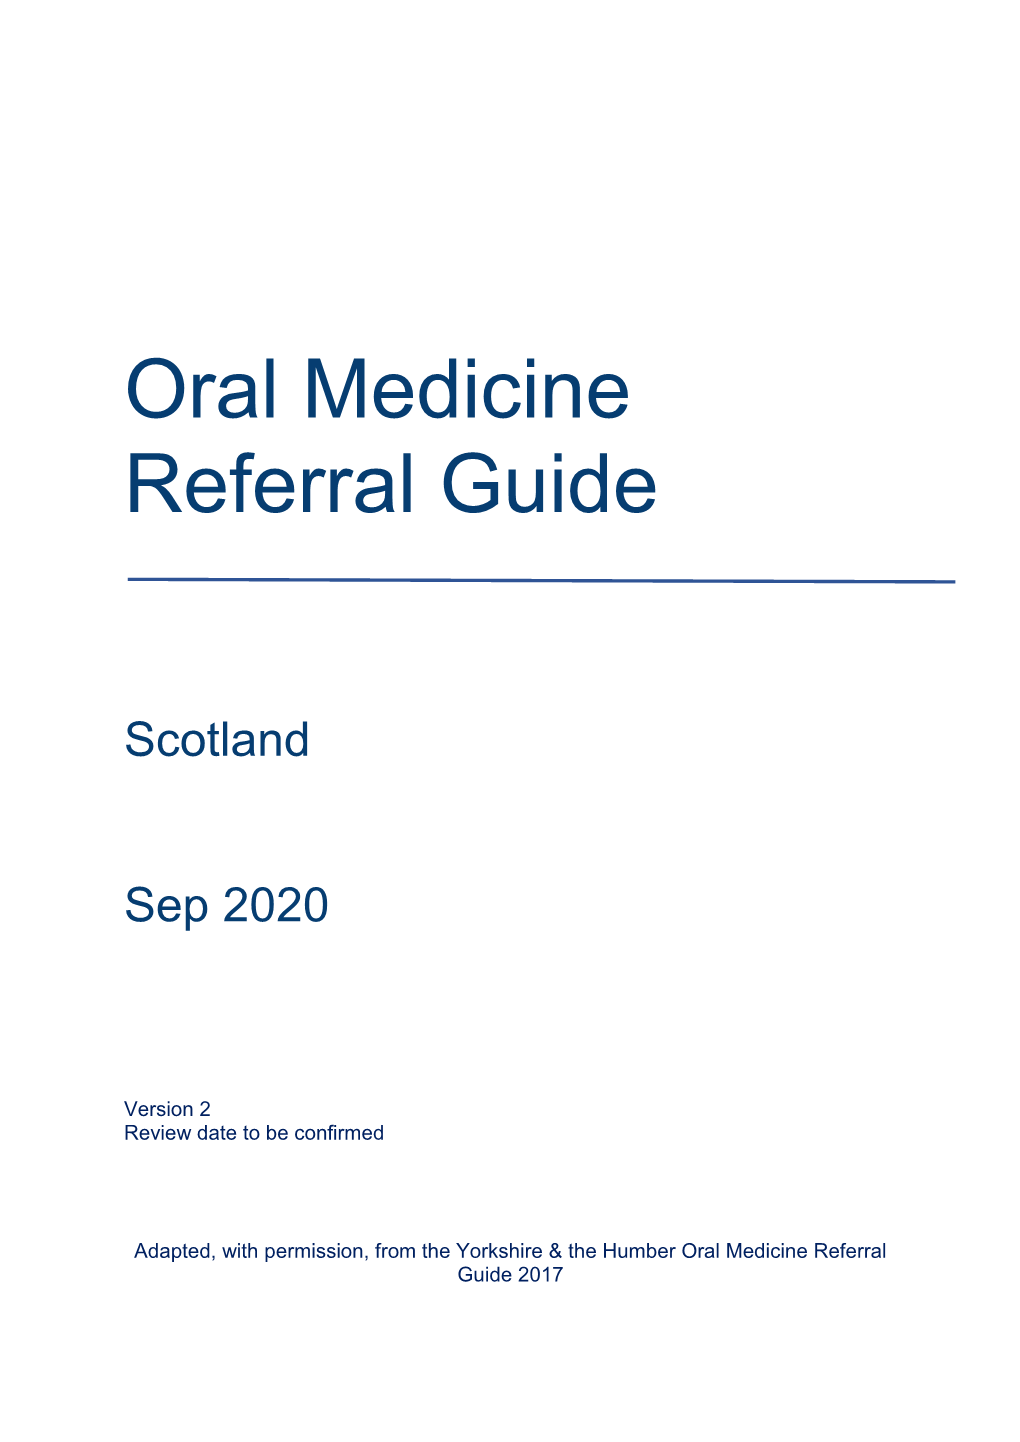 Oral Medicine Referral Guide Final